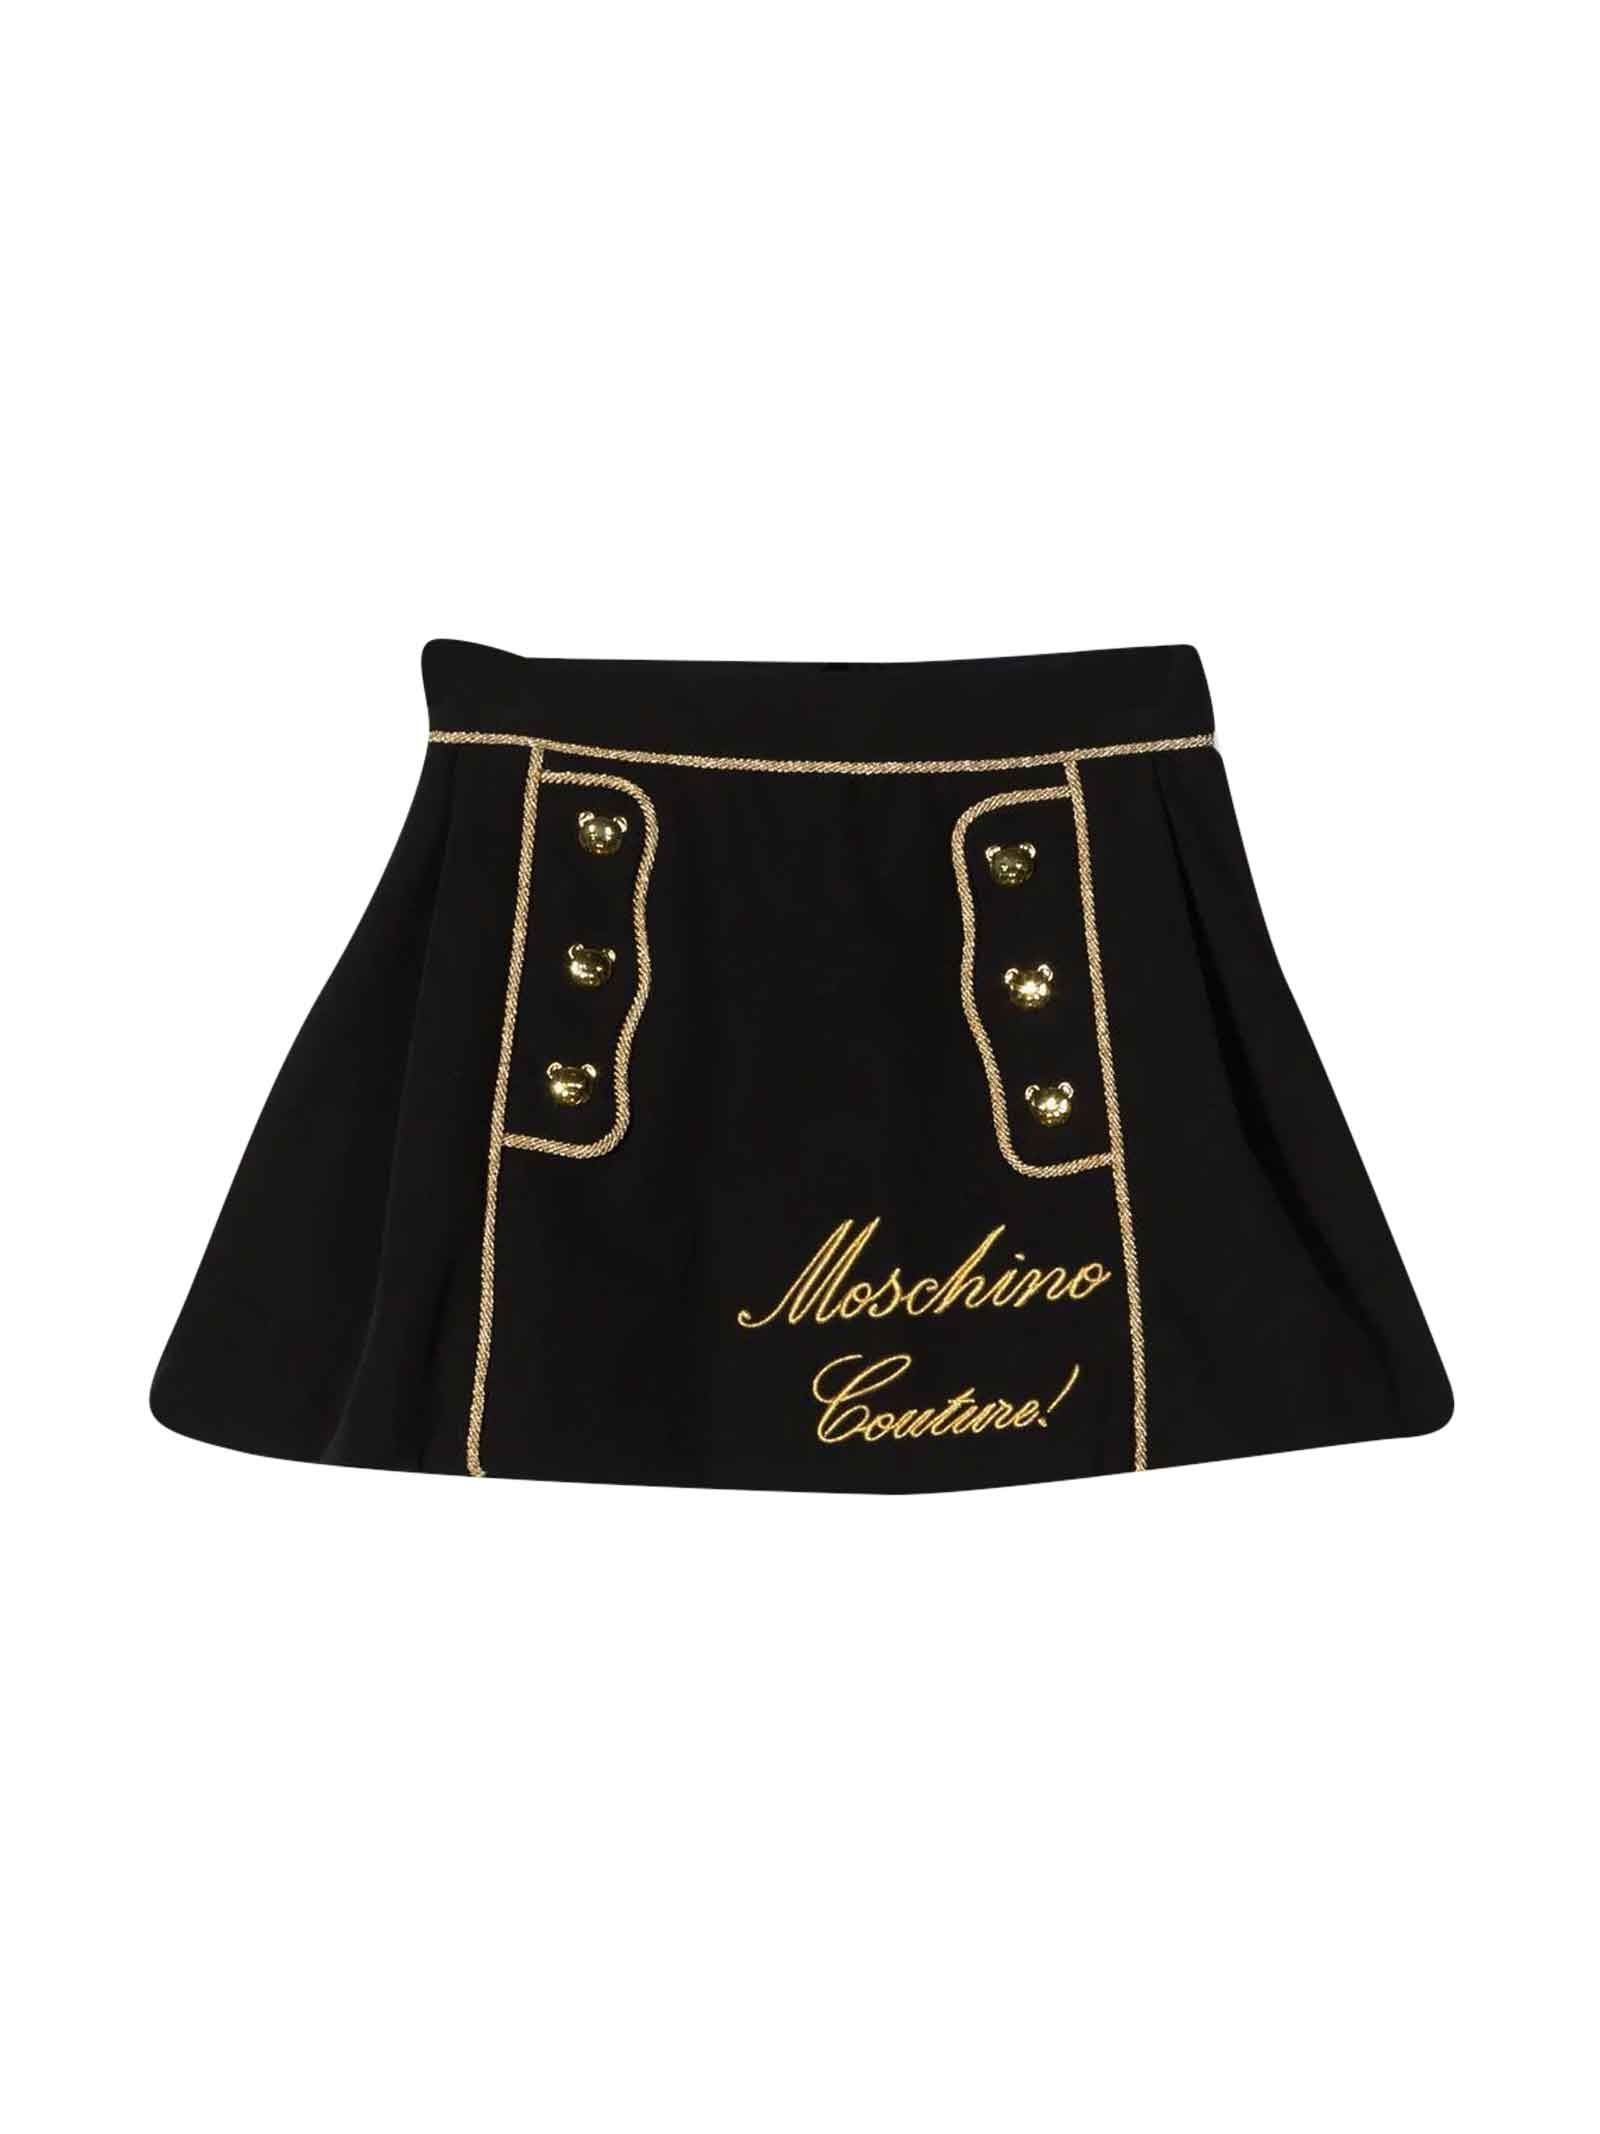 Moschino Black Skirt Girl